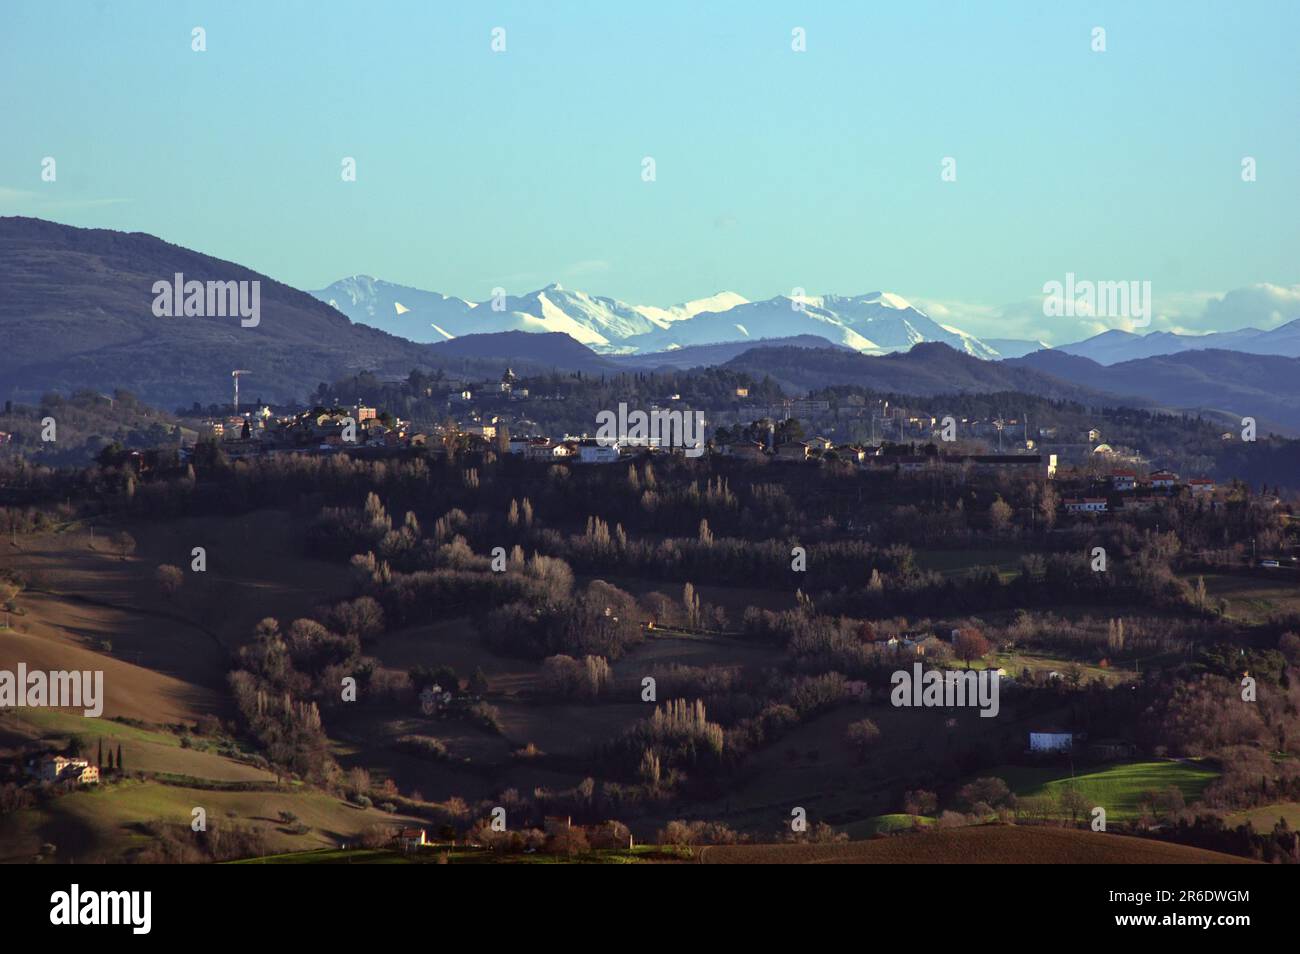 colline di Urbino dans primo piano e dans lontananza i monti Sibillini coperti di neve Banque D'Images